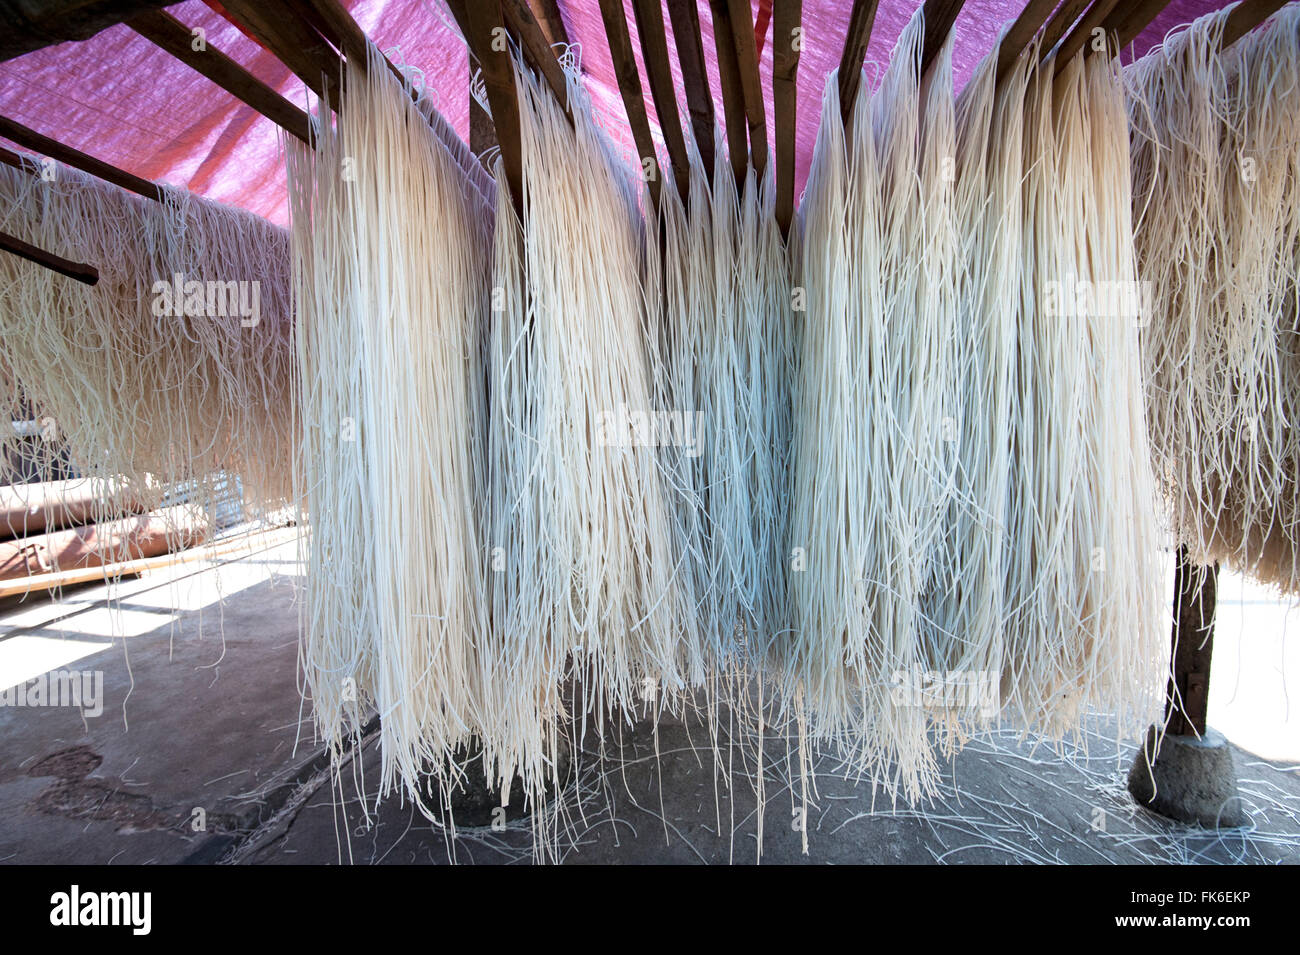 Frisch zubereitete Reisnudeln über Bambus-Stangen zum Trocknen hängen, bereit für den Verkauf, Hsipaw, Shan-Staat, Myanmar (Burma), Asien Stockfoto